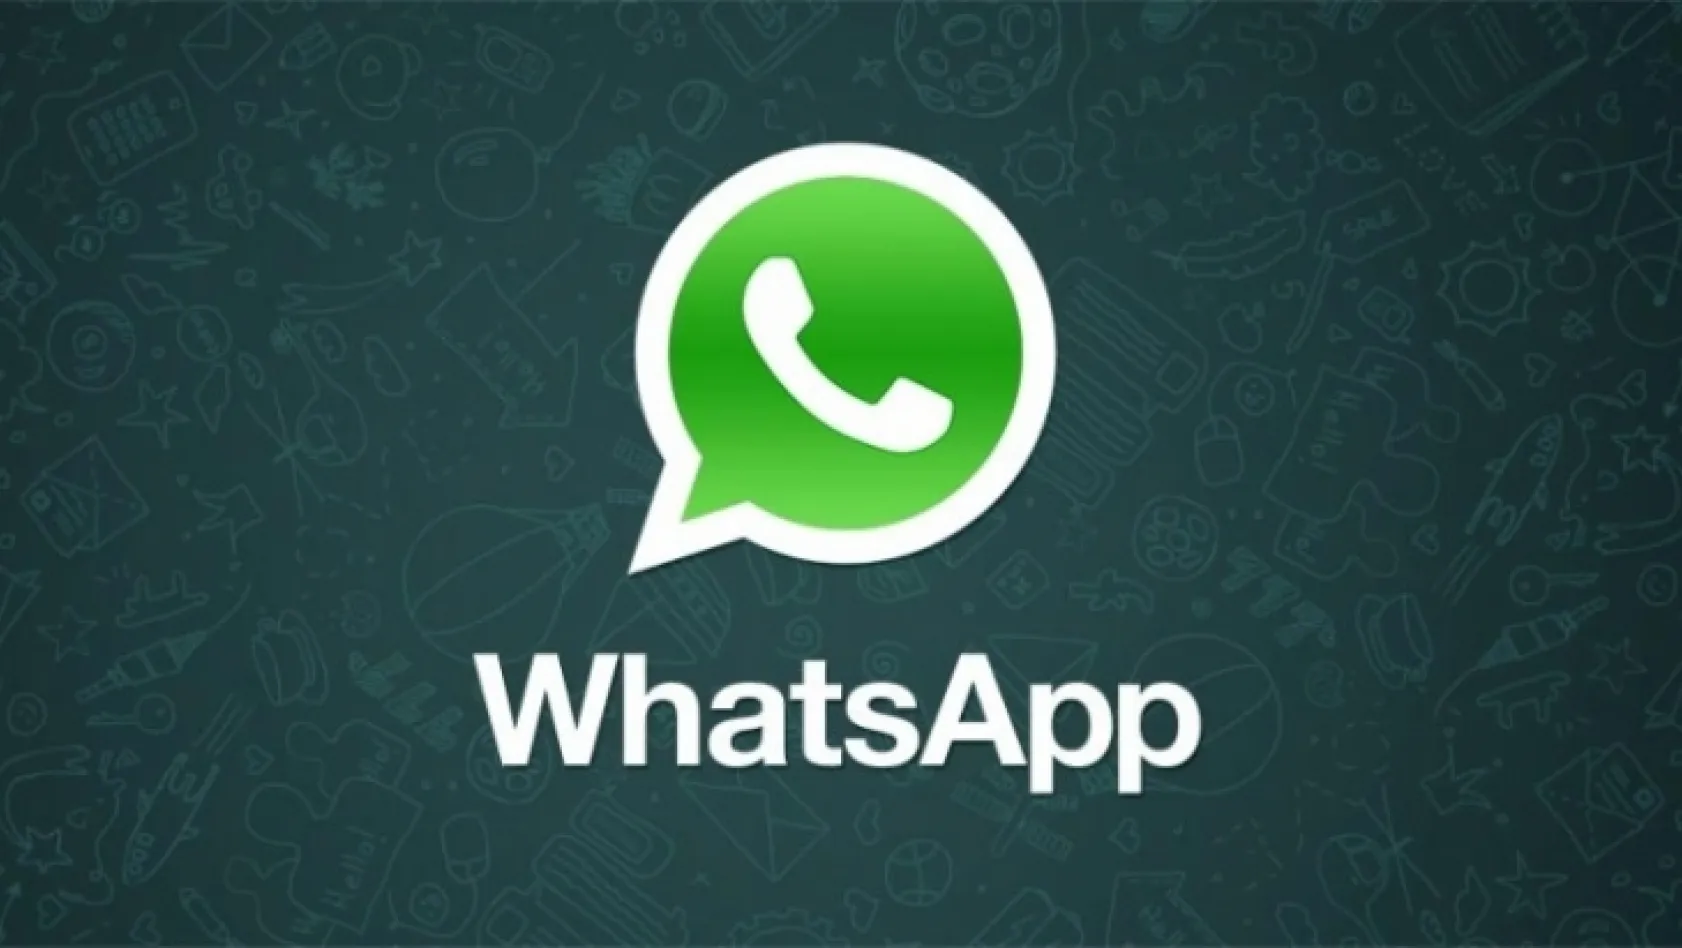 Whatsapp'ta yeni dönem başlıyor